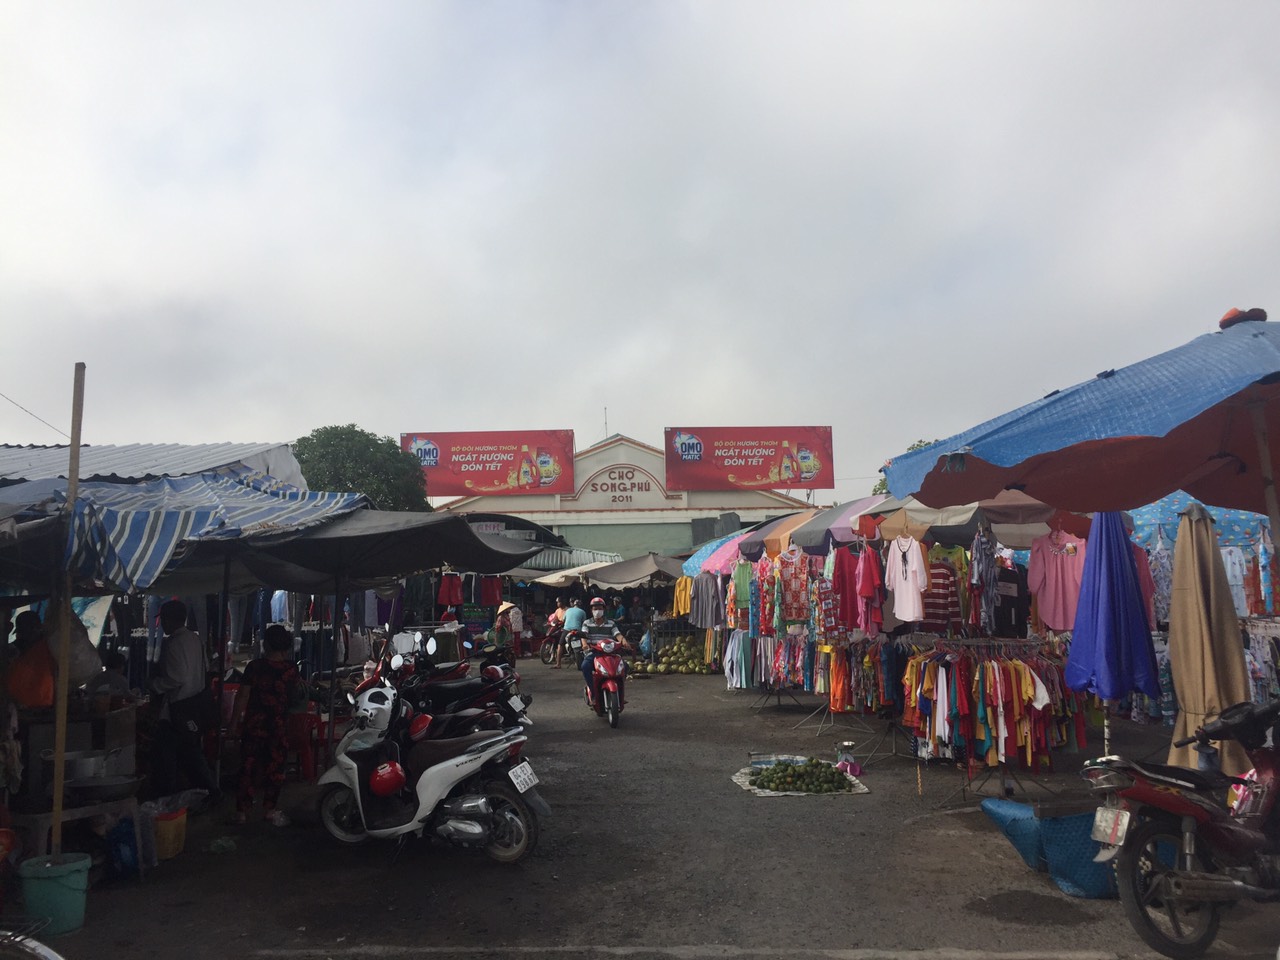 Chính chủ Cần bán nền ngay chợ Đô Thị Song Phú – QL1A – Cách TP. Cần Thơ khoảng 15Km